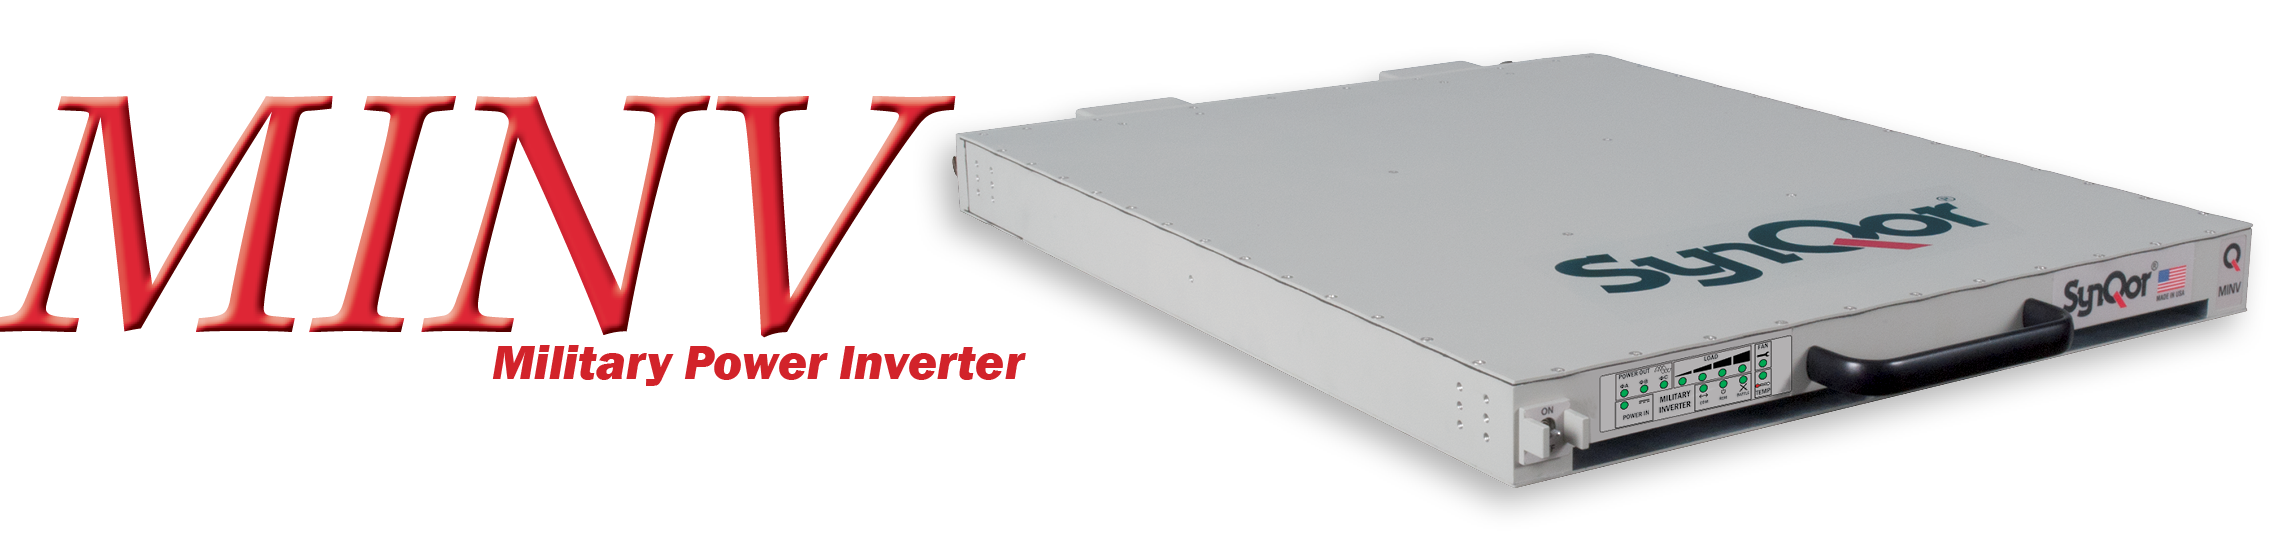 Military Grade Power Inverter (MINV)